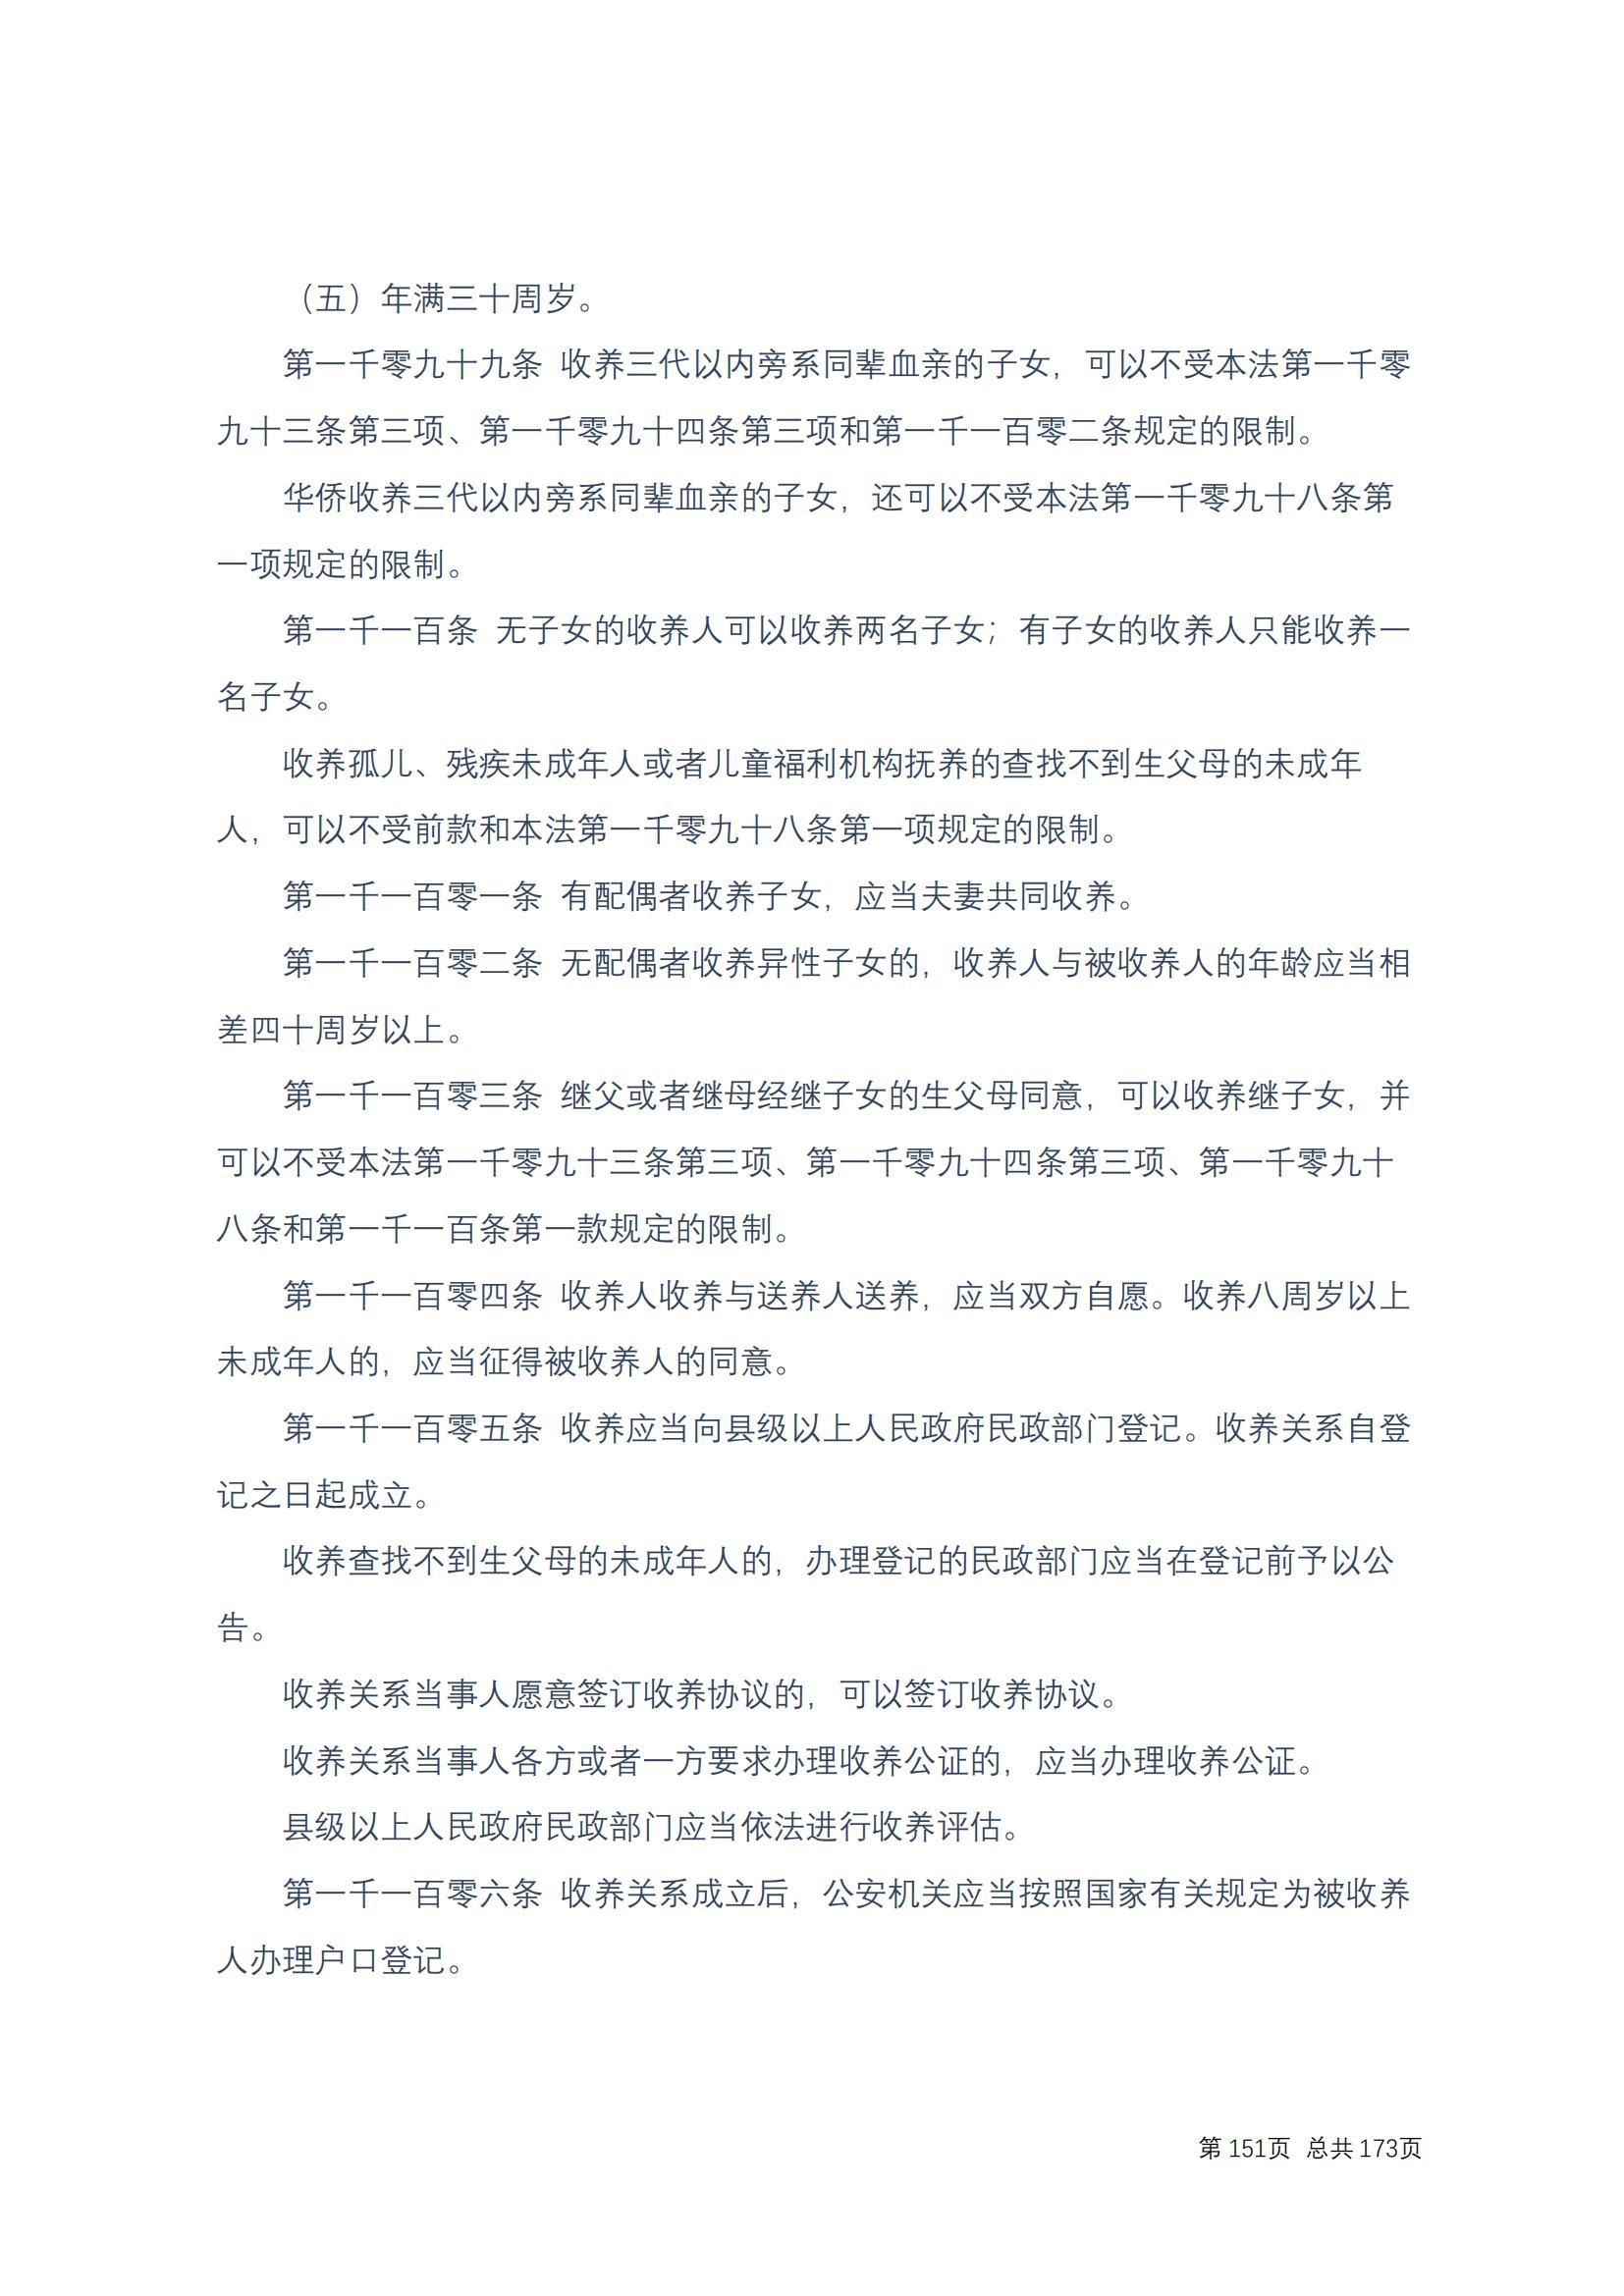 中华人民共和国民法典 修改过_150